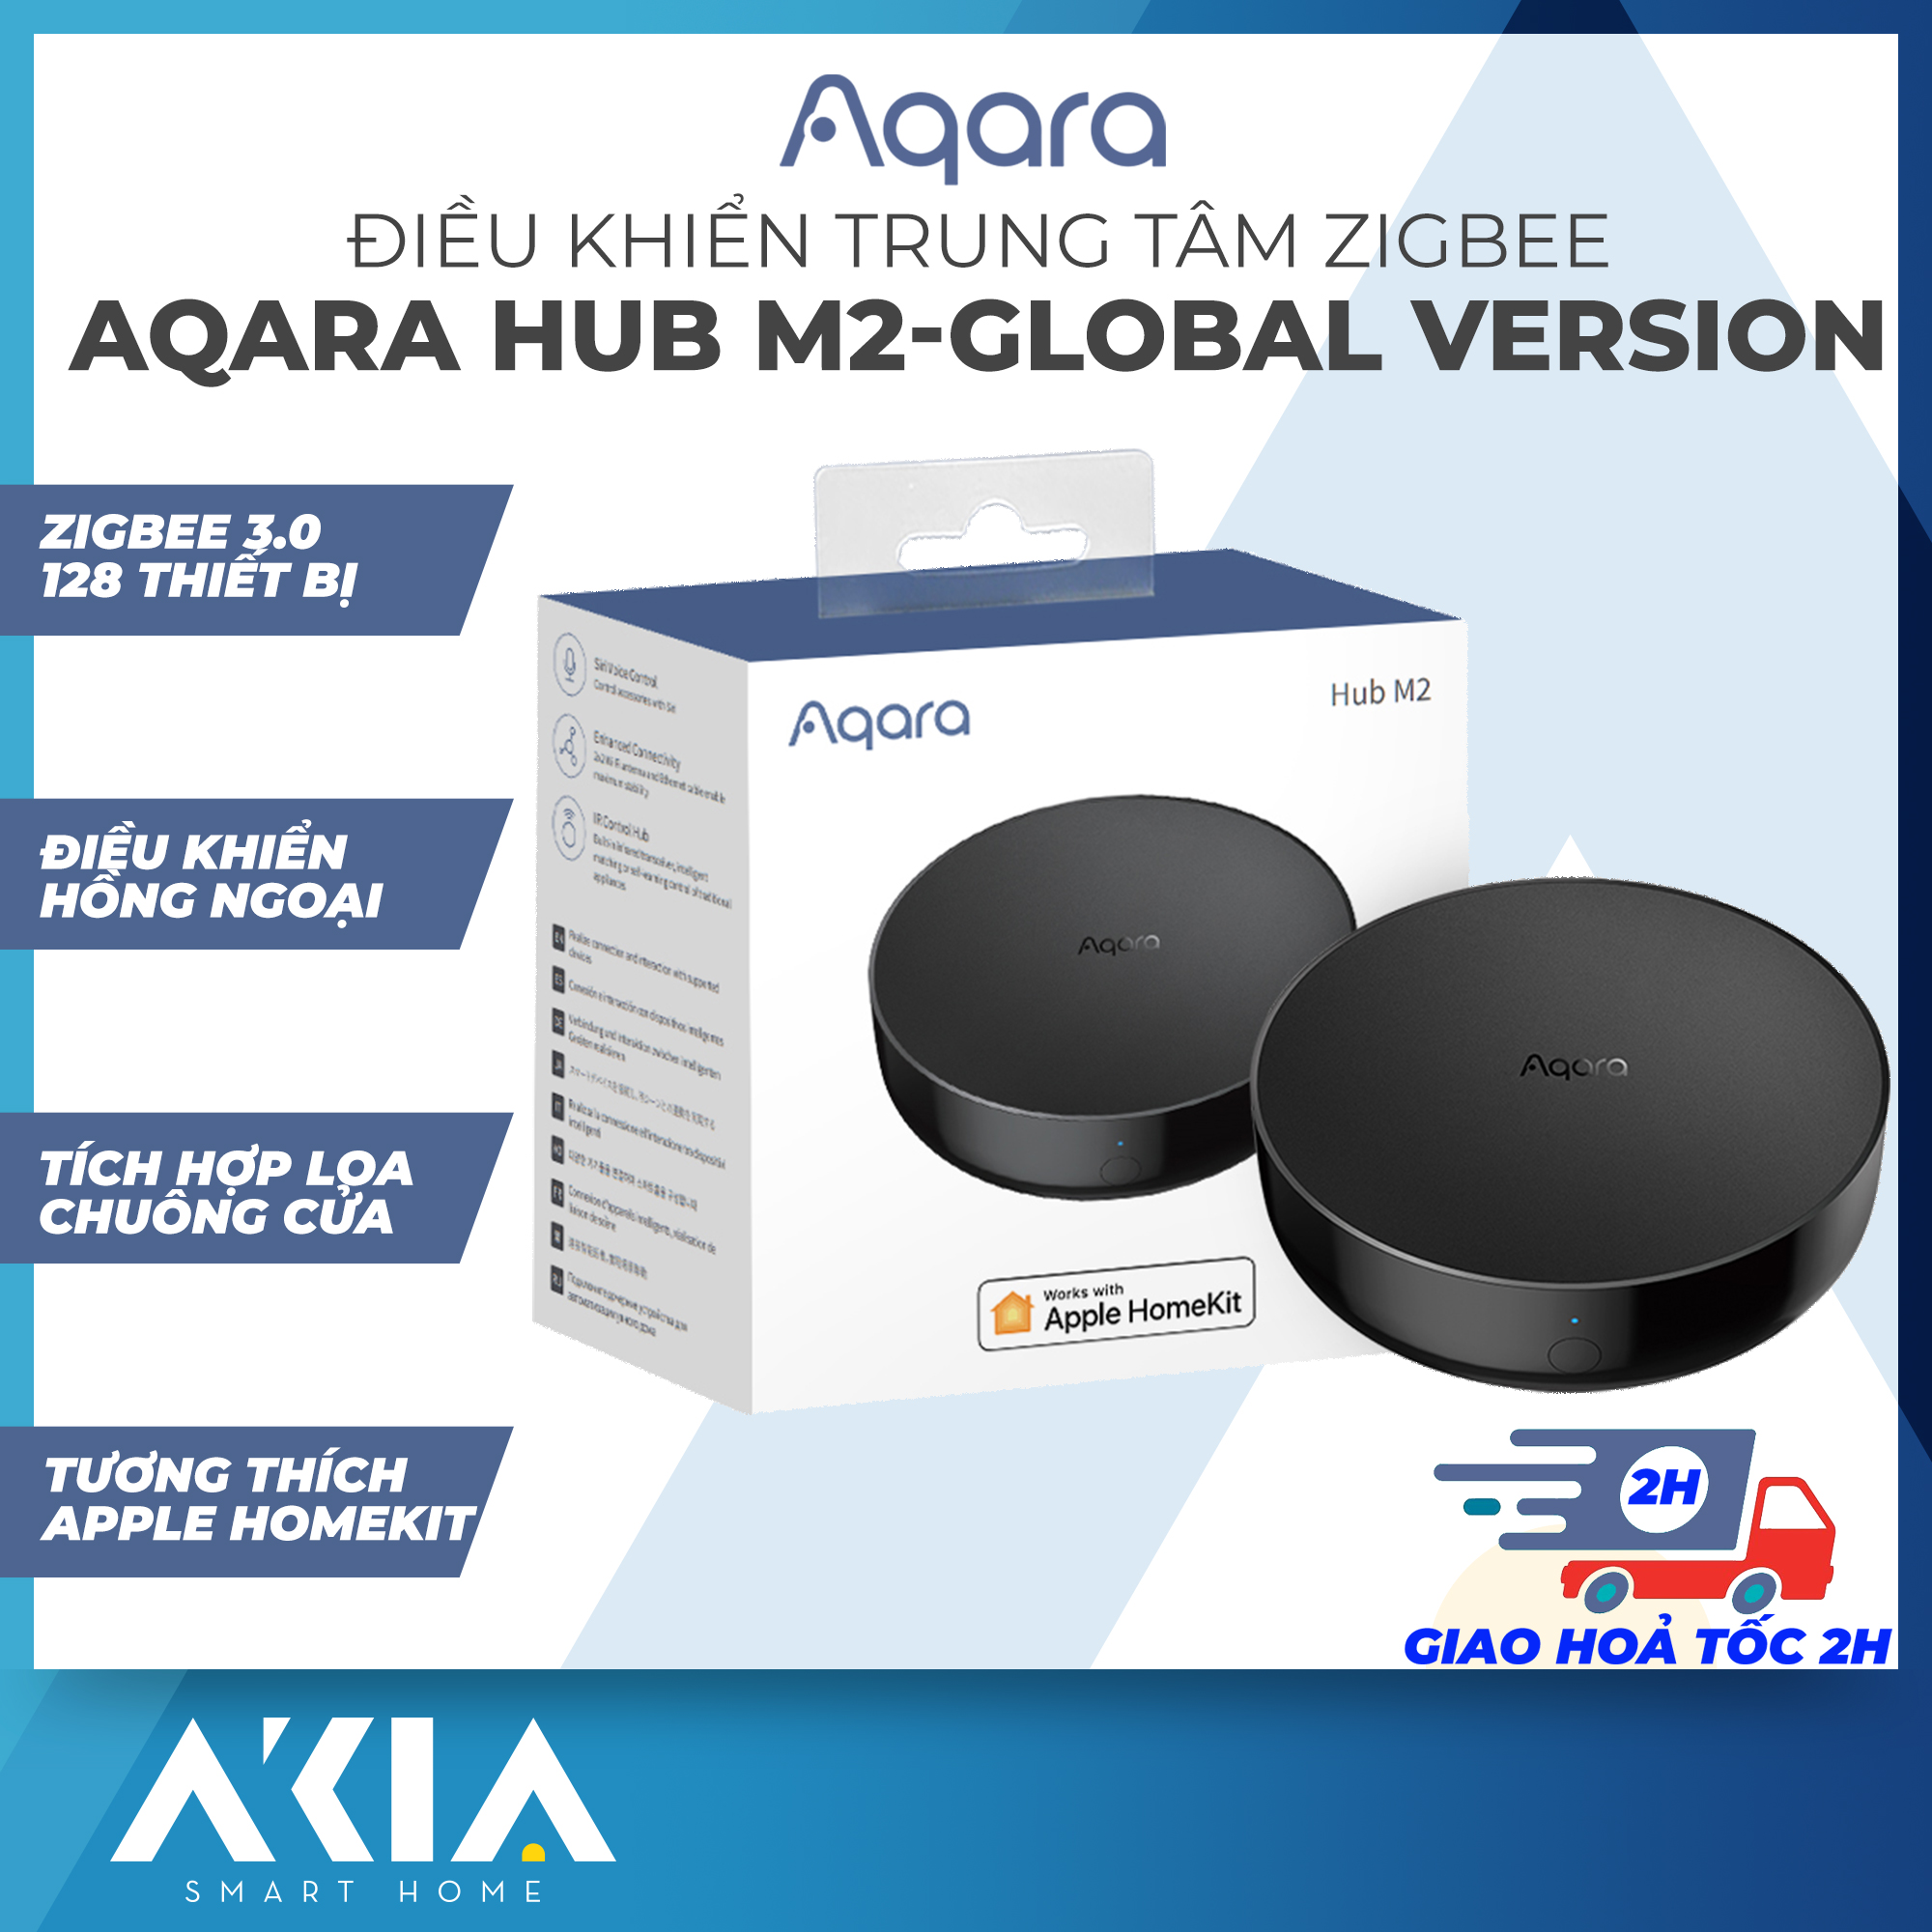 Aqara Hub M2 bản Quốc Tế HM2-G01 - Bộ điều khiển trung tâm Zigbee 3.0